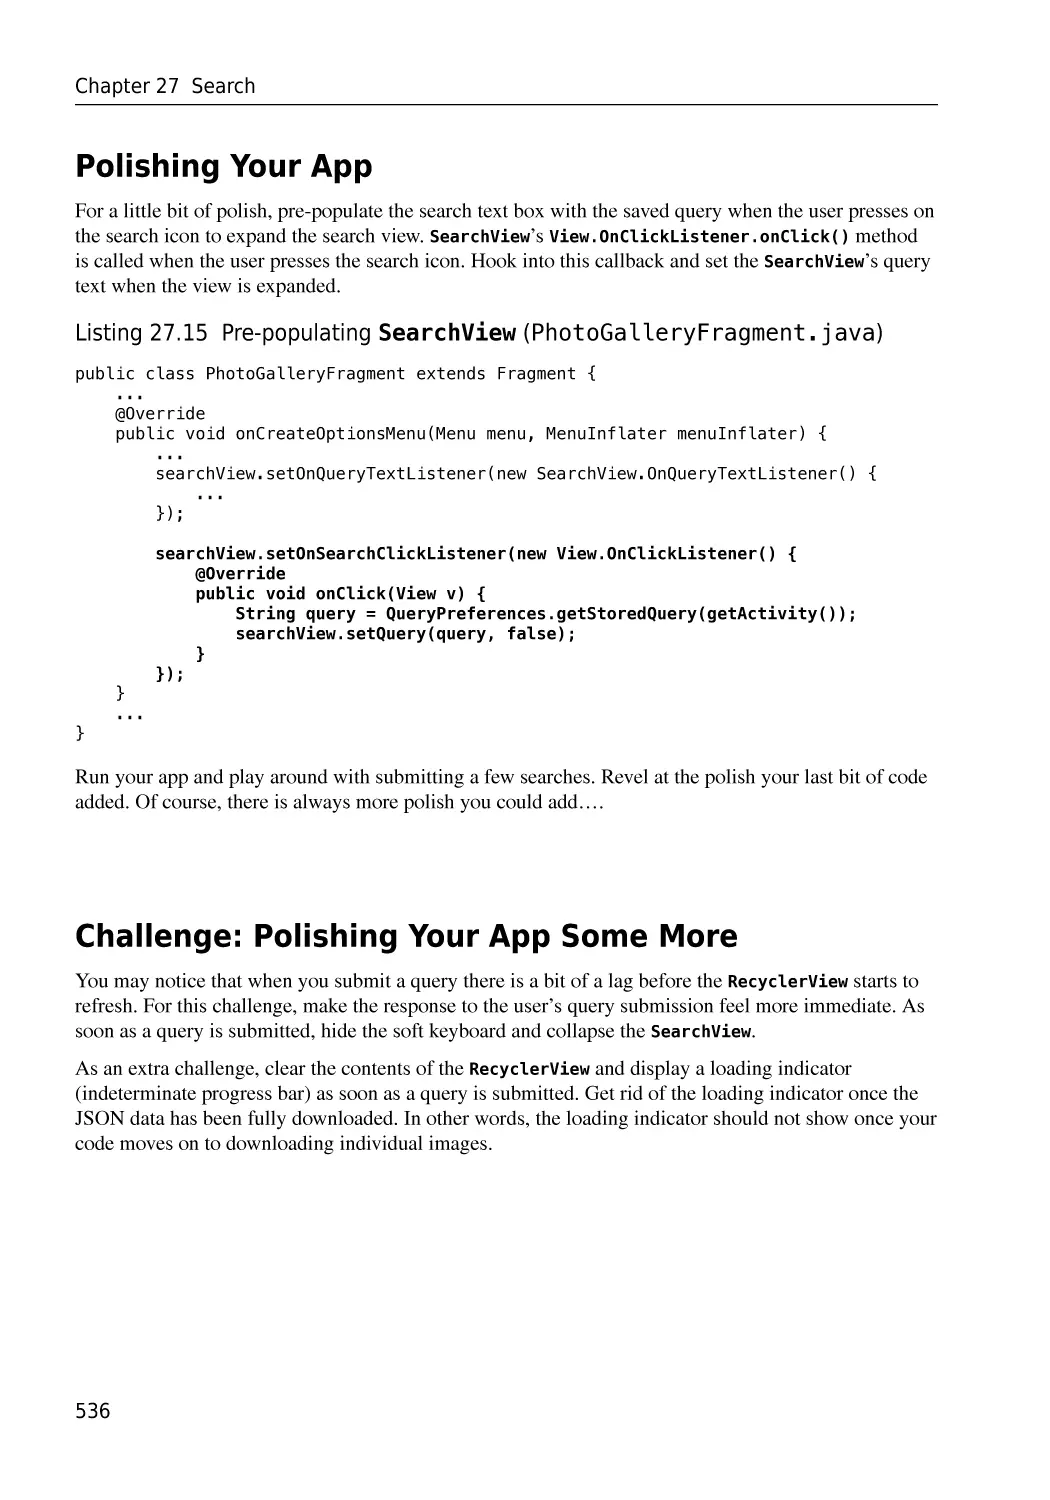 Polishing Your App
Challenge